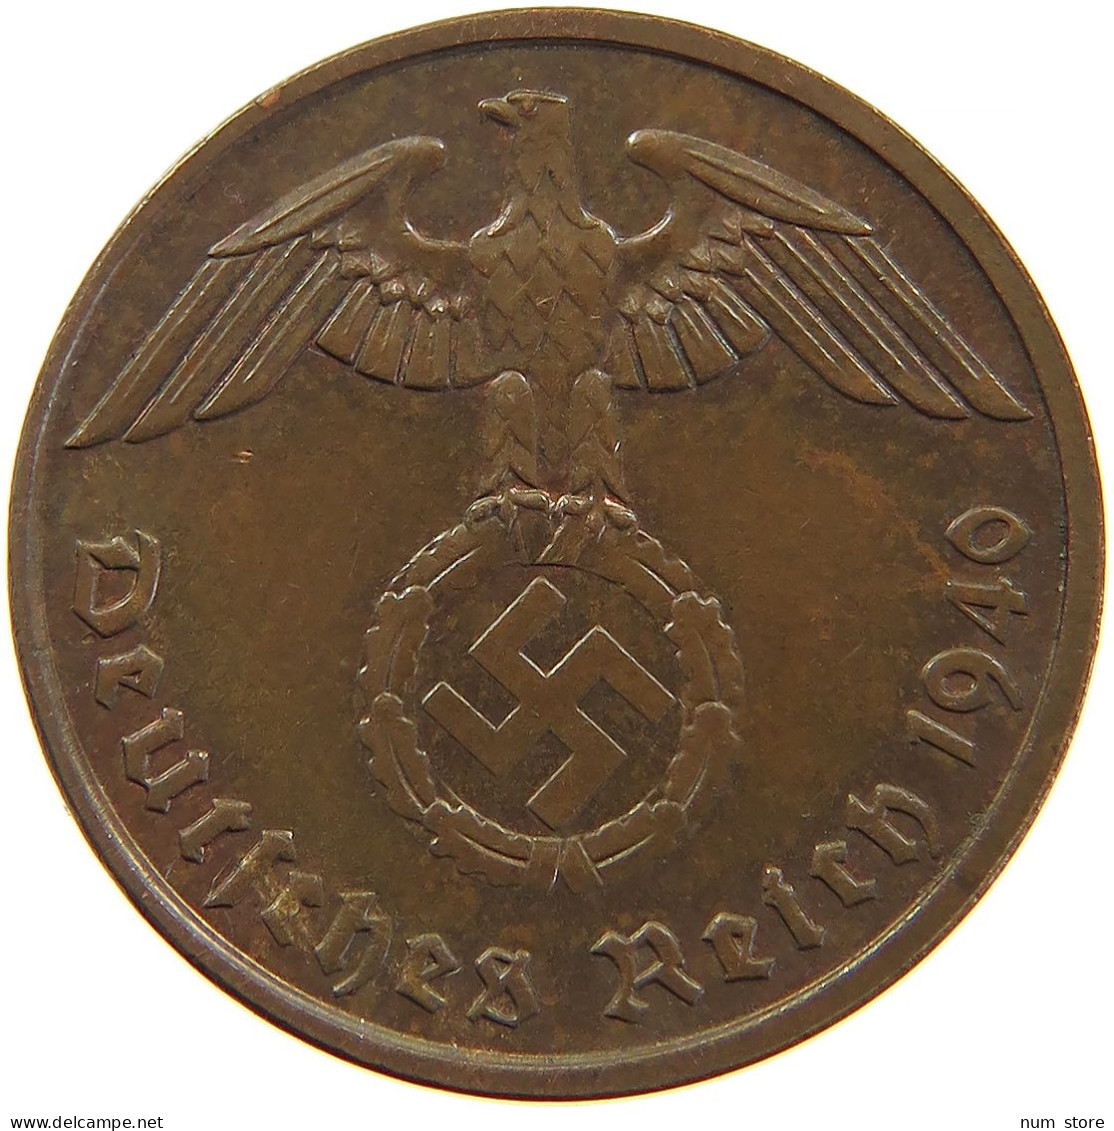 GERMANY 2 REICHSPFENNIG 1940 E #s083 0335 - 2 Reichspfennig